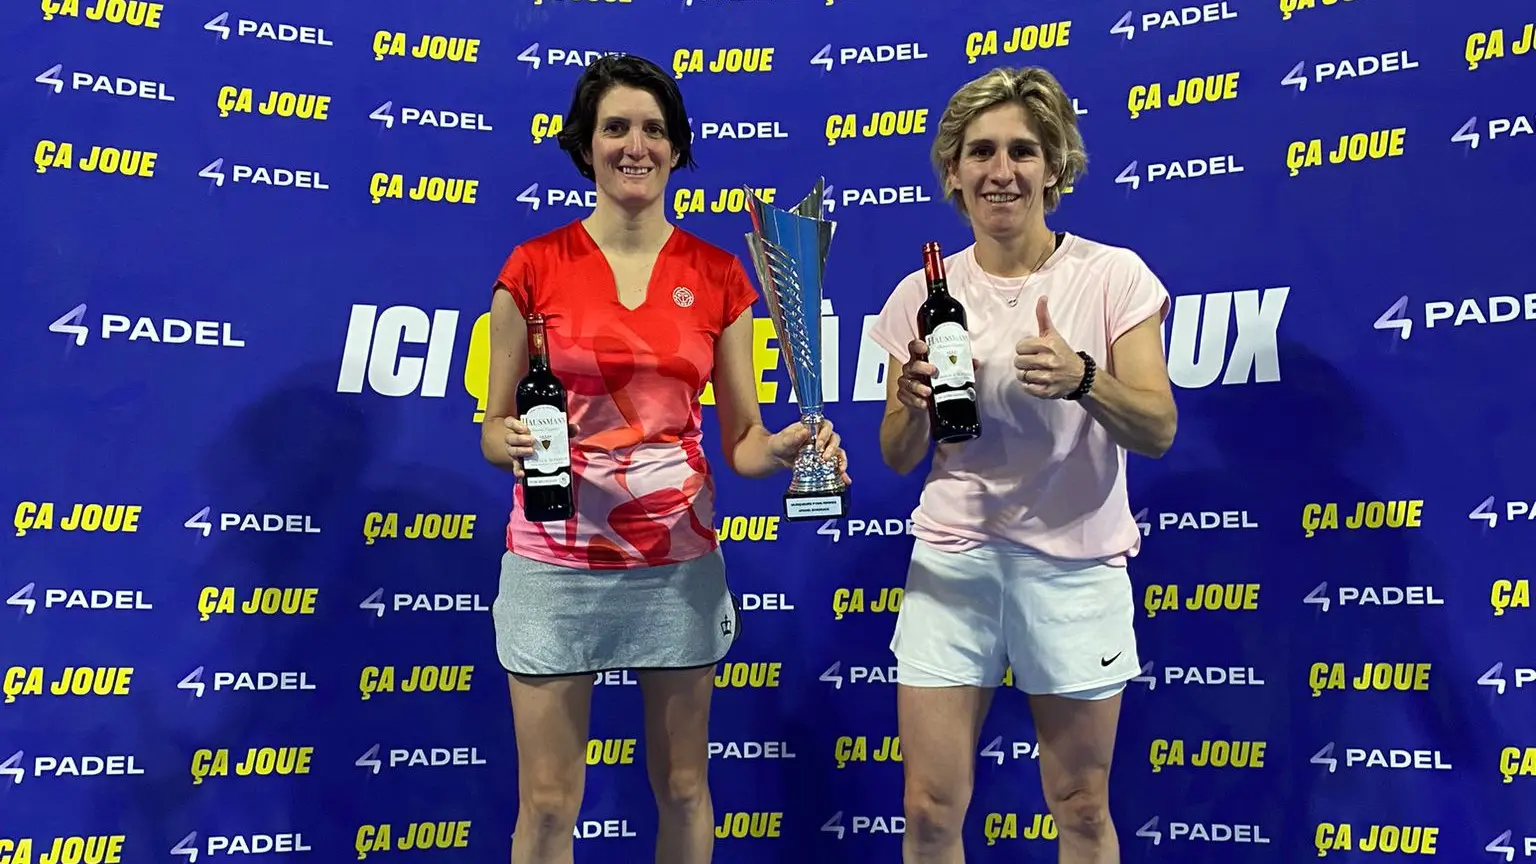 P1000 4Padel Bordeaux – Émilie Loit e Marie Lefevre sfidano ogni pronostico e vincono il titolo!